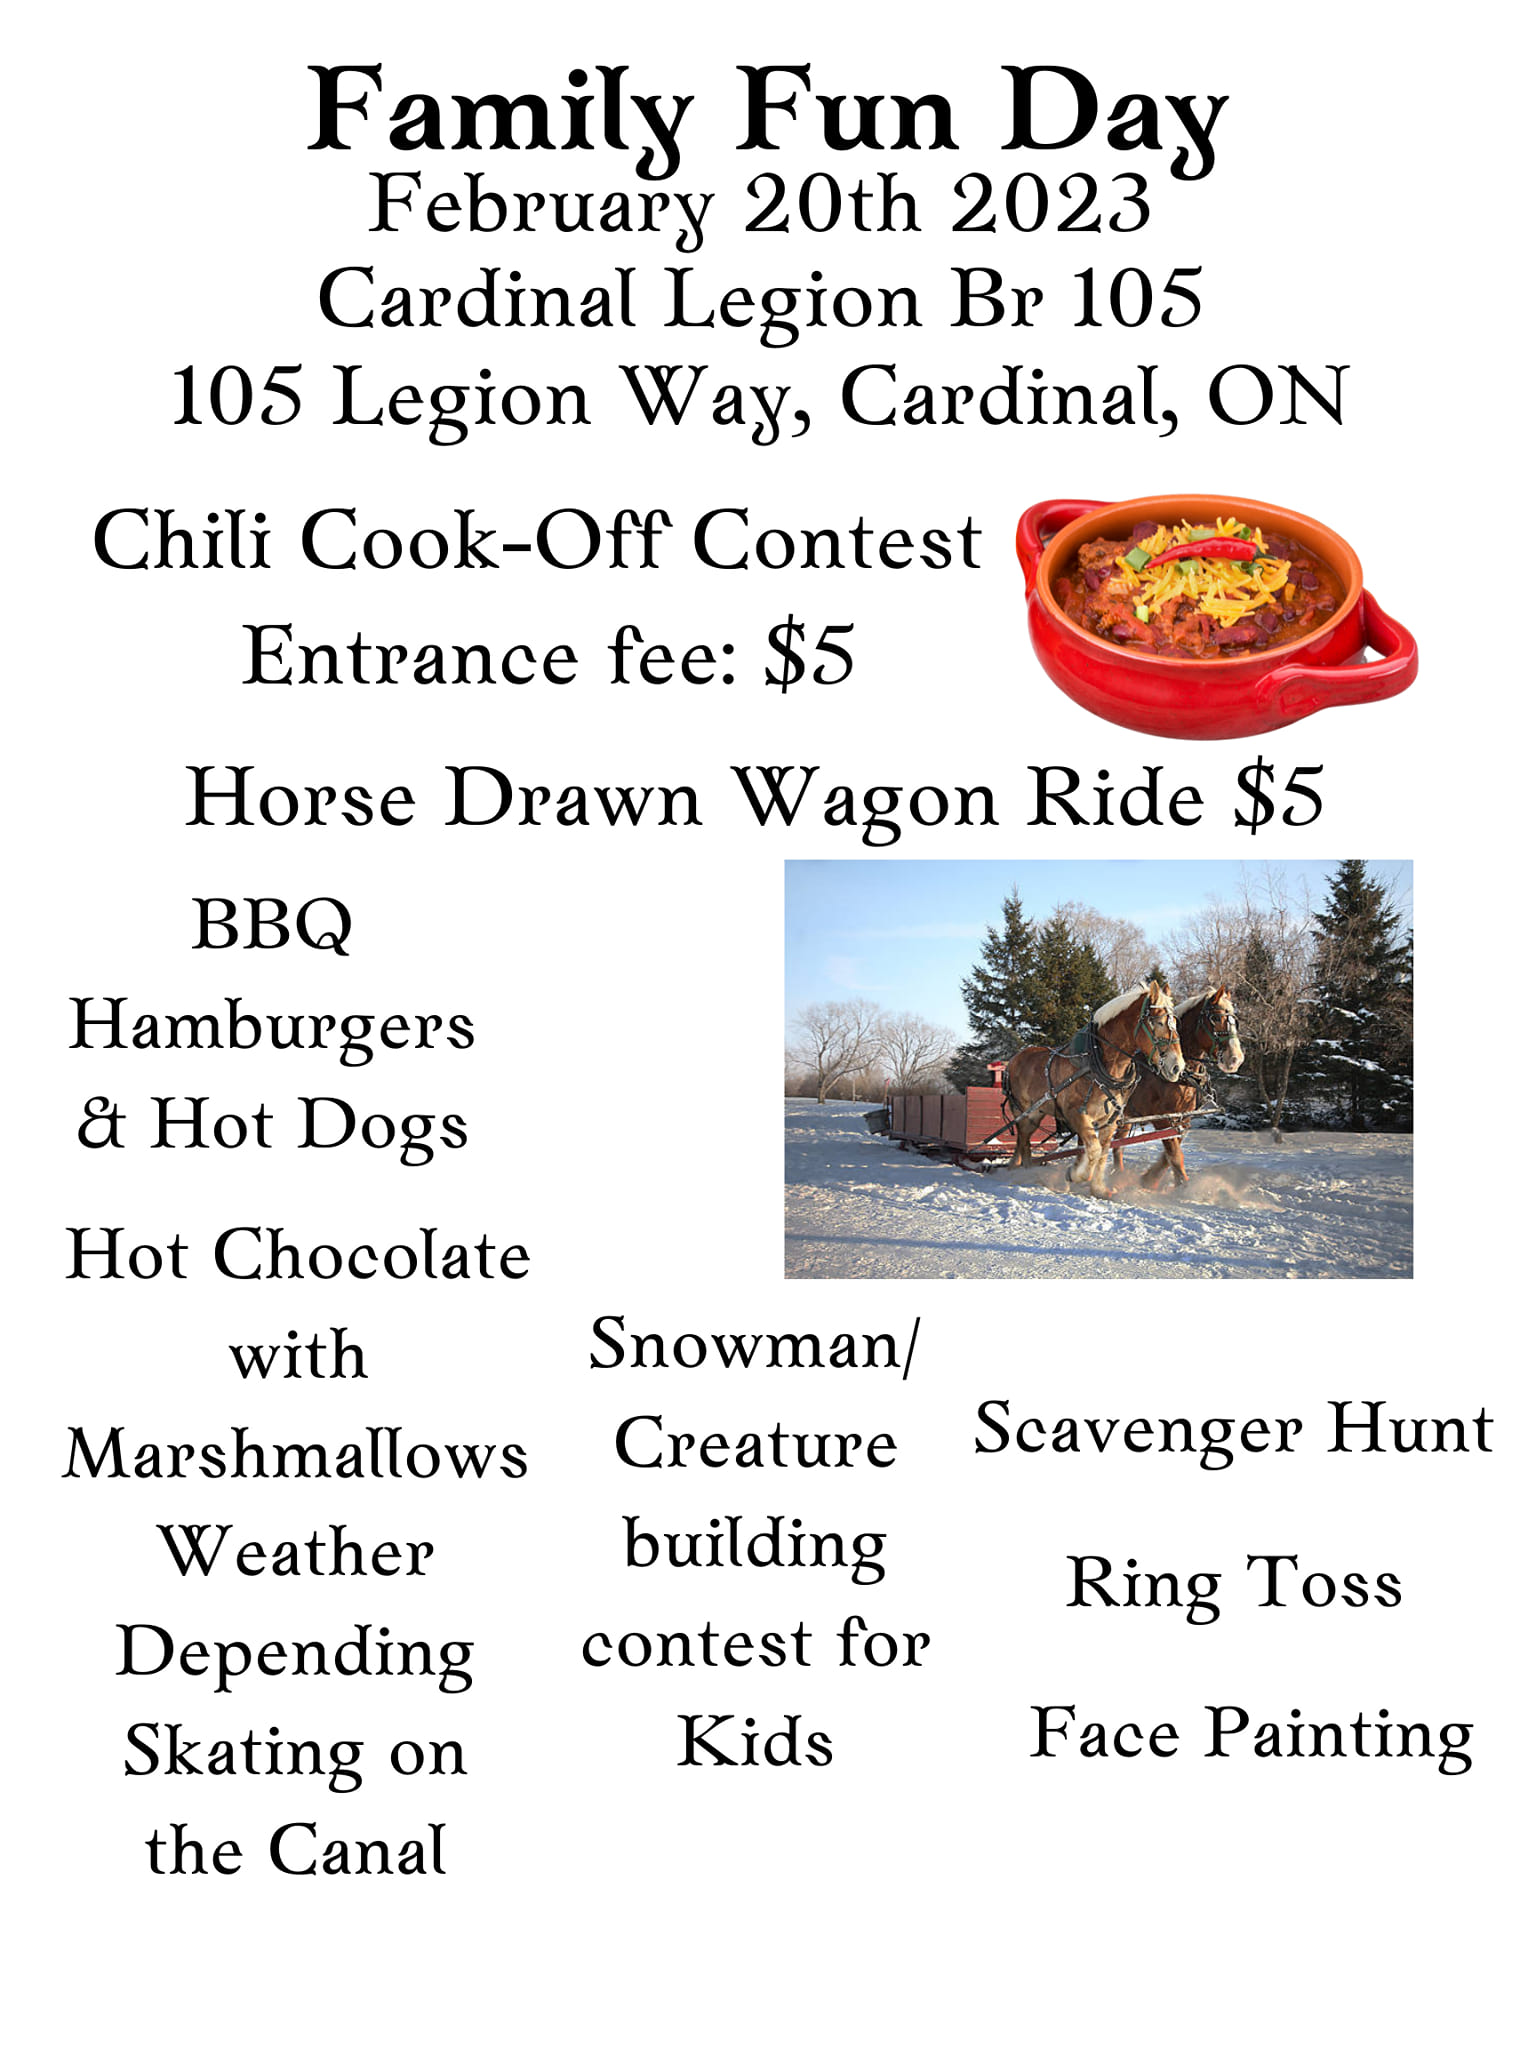 Cardinal Legion Family Fun Day @ Cardinal Legion Branch 105 | Cardinal | Ontario | Canada